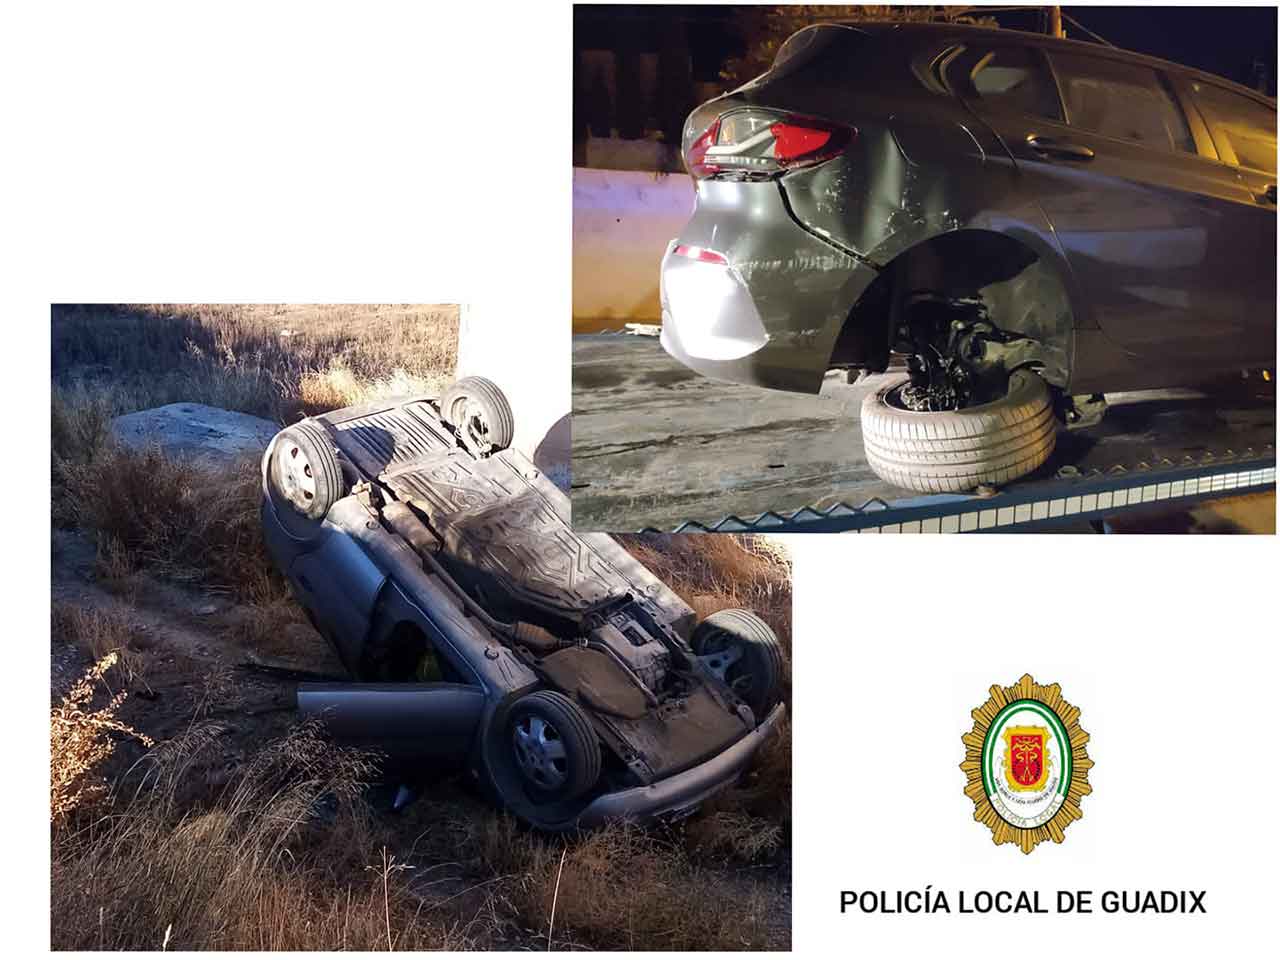 La Policía local de Guadix informa de dos aparatosos accidentes sin heridos